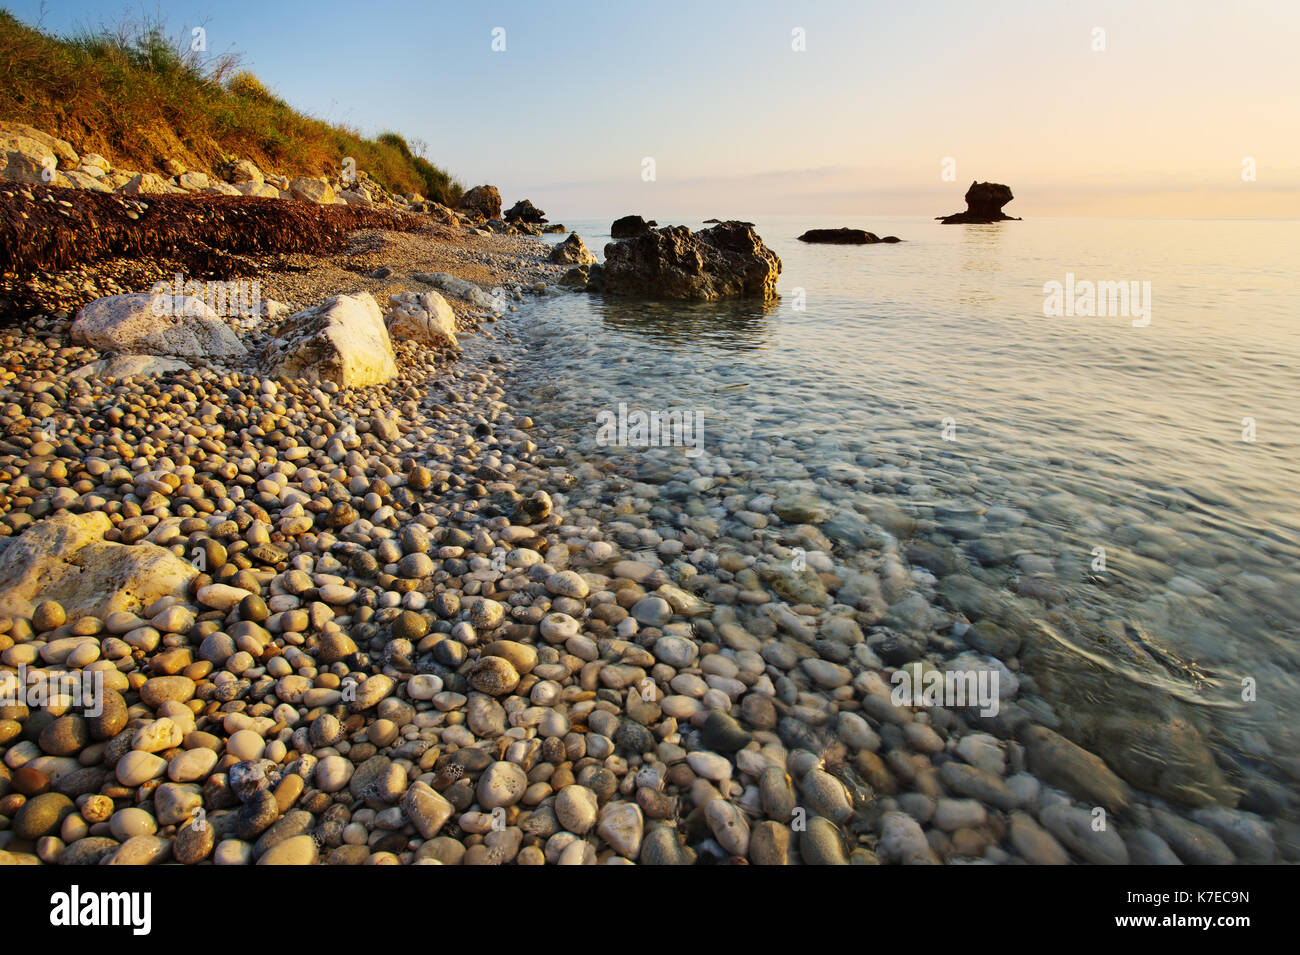 Limenia Beach in der Nähe von Poros, Kefalonia, Griechenland Stockfoto